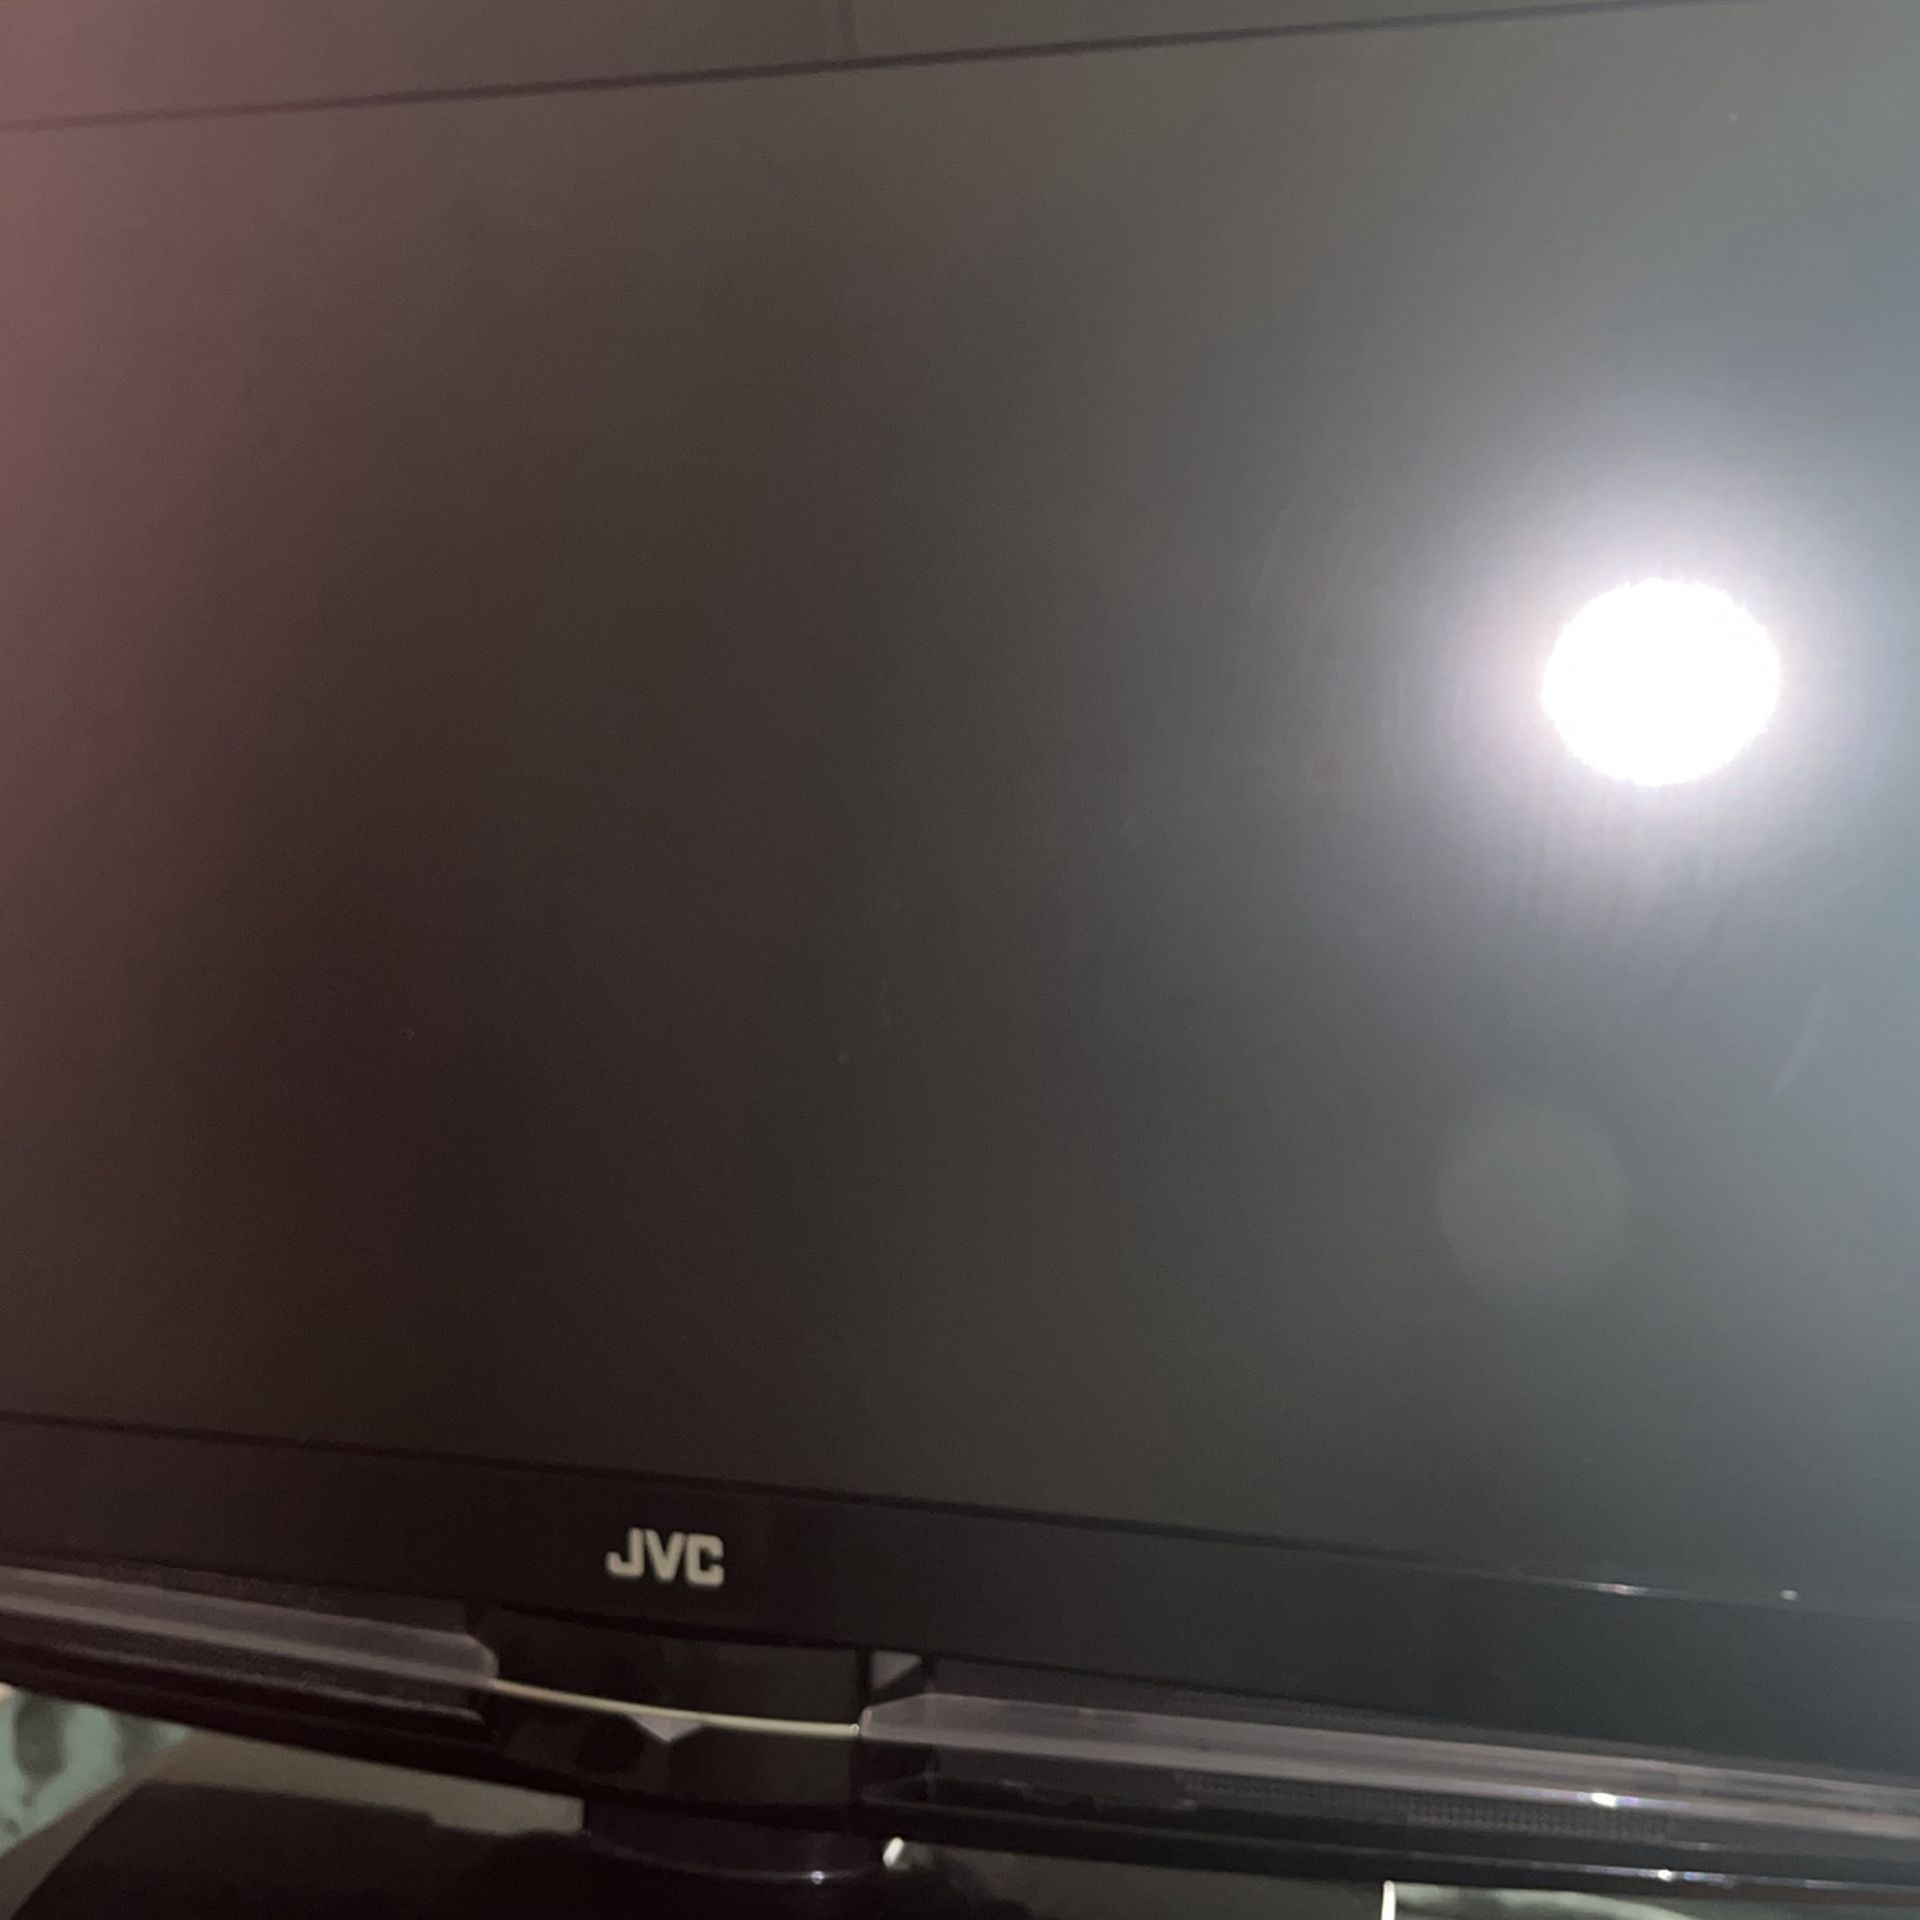 JVC 32” LCD TV